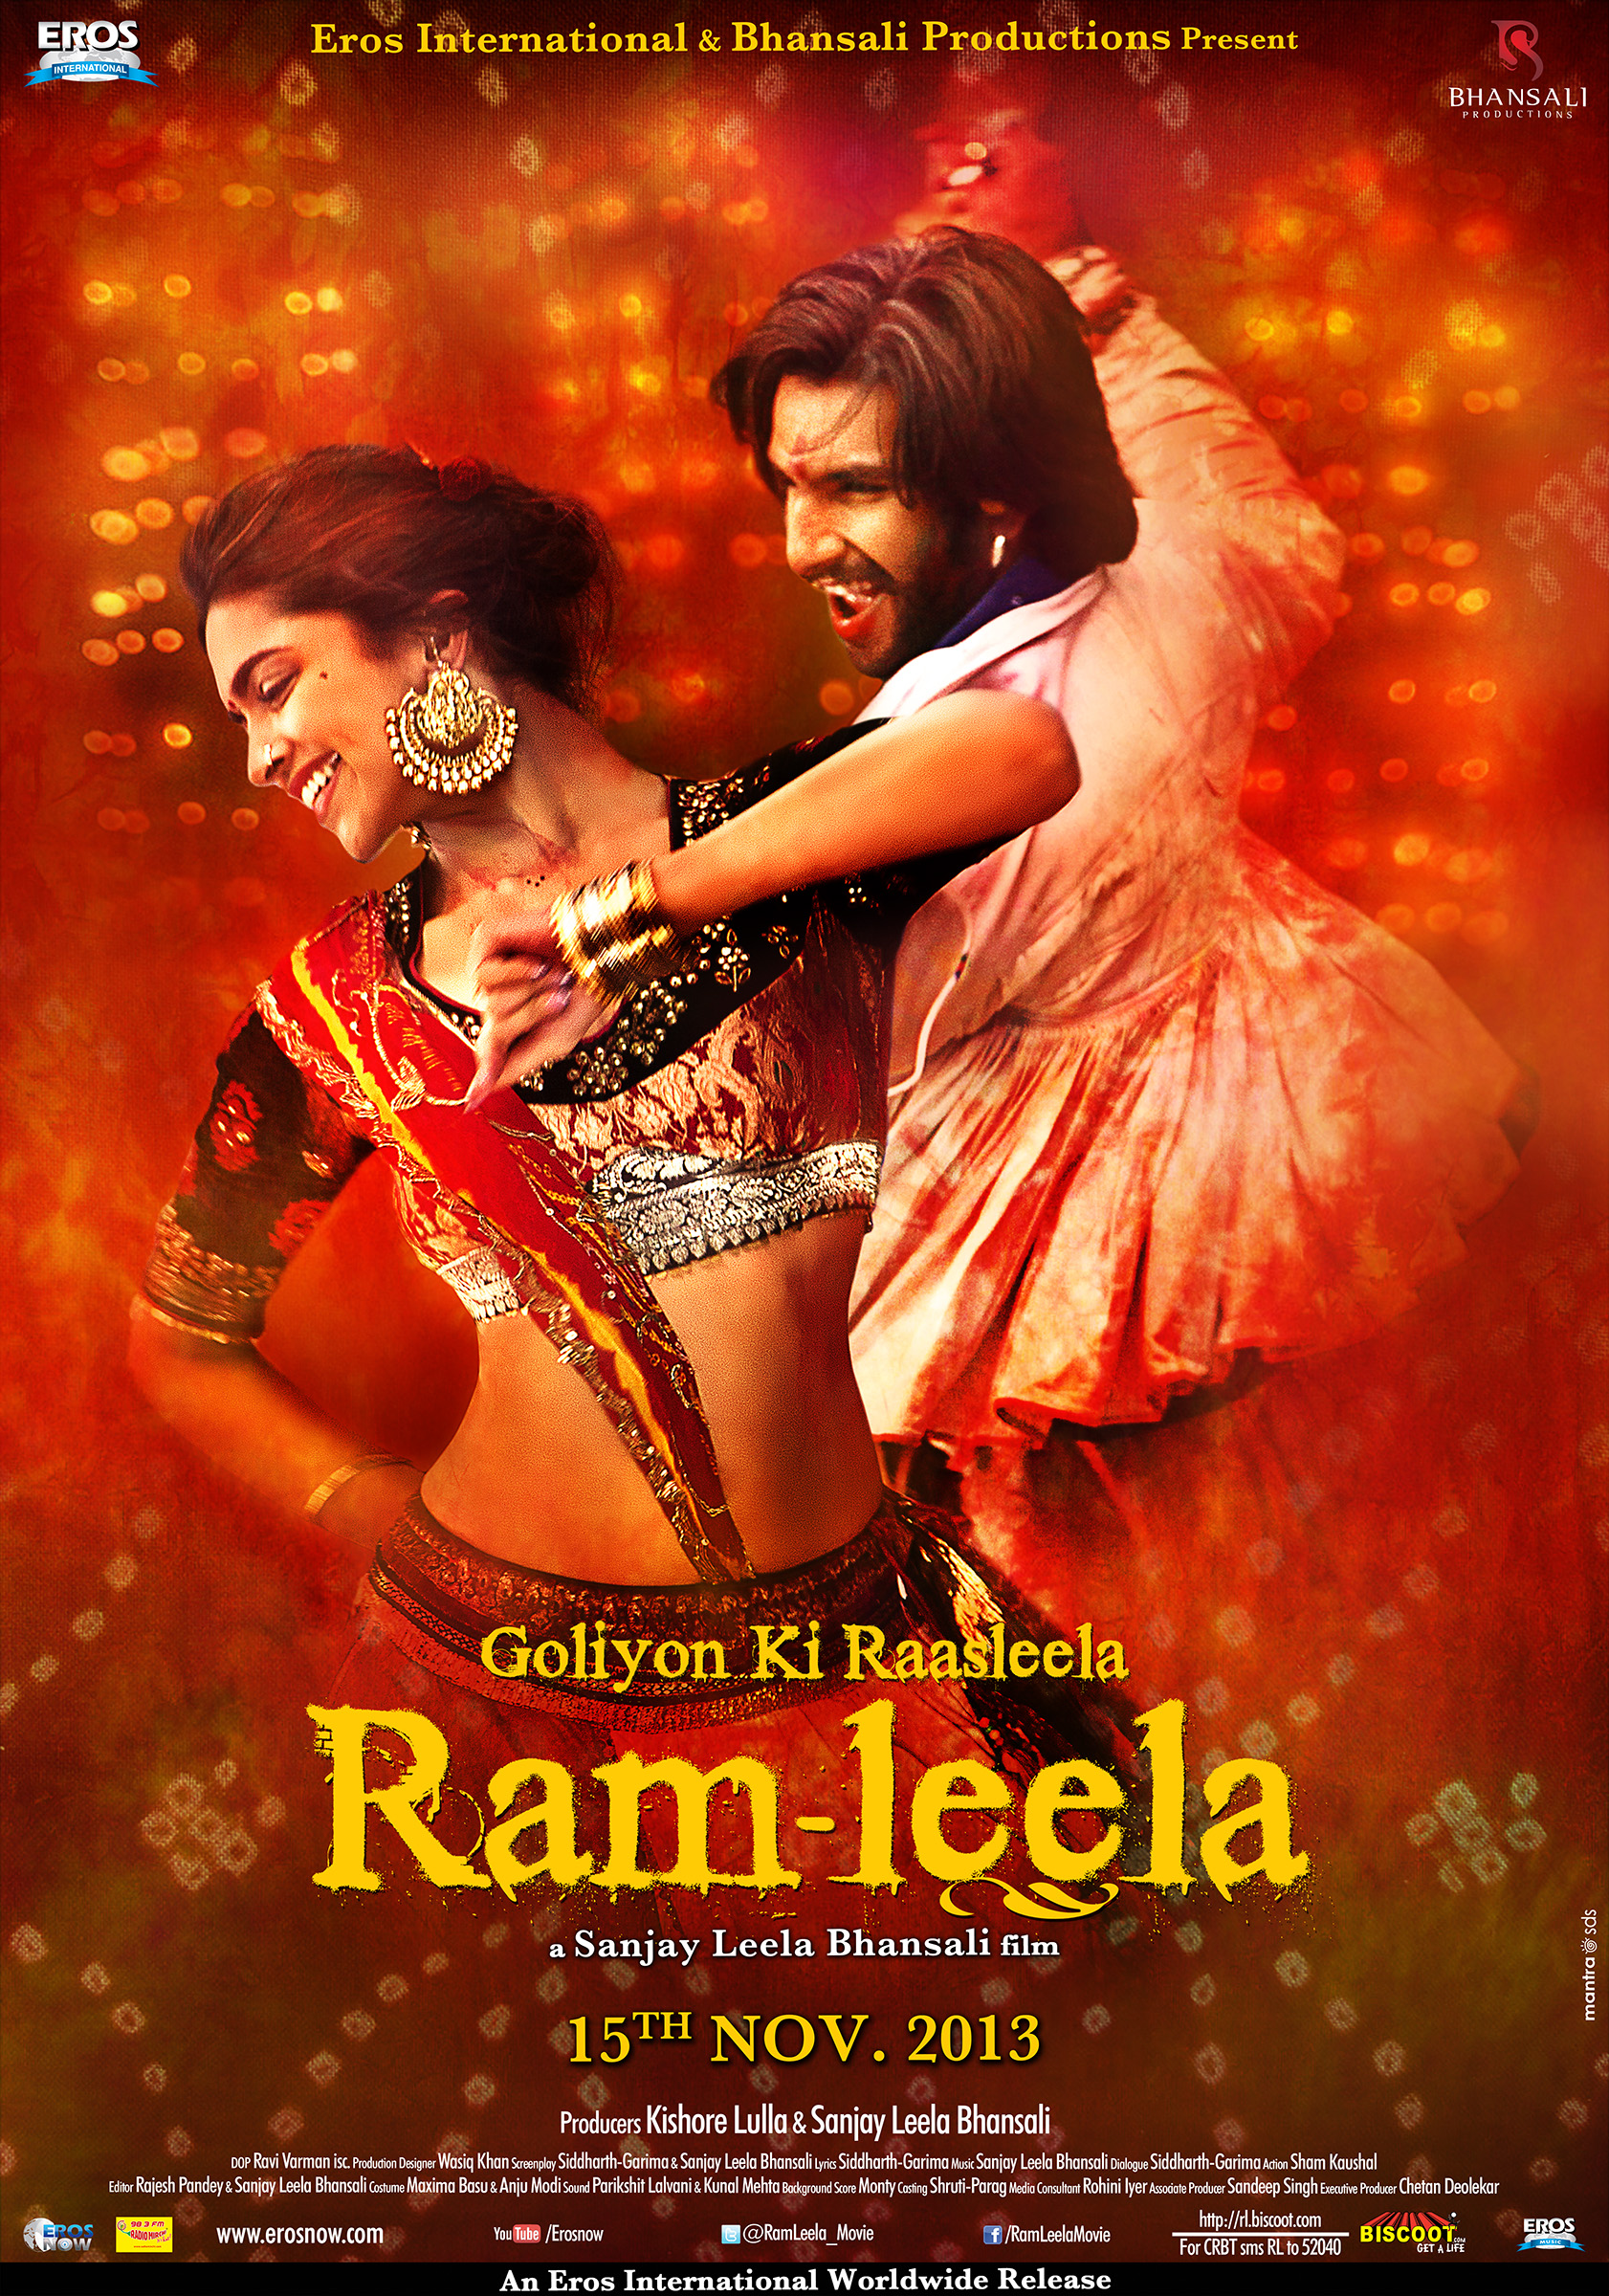 'Goliyon Ki Rasleela: Ram Leela'